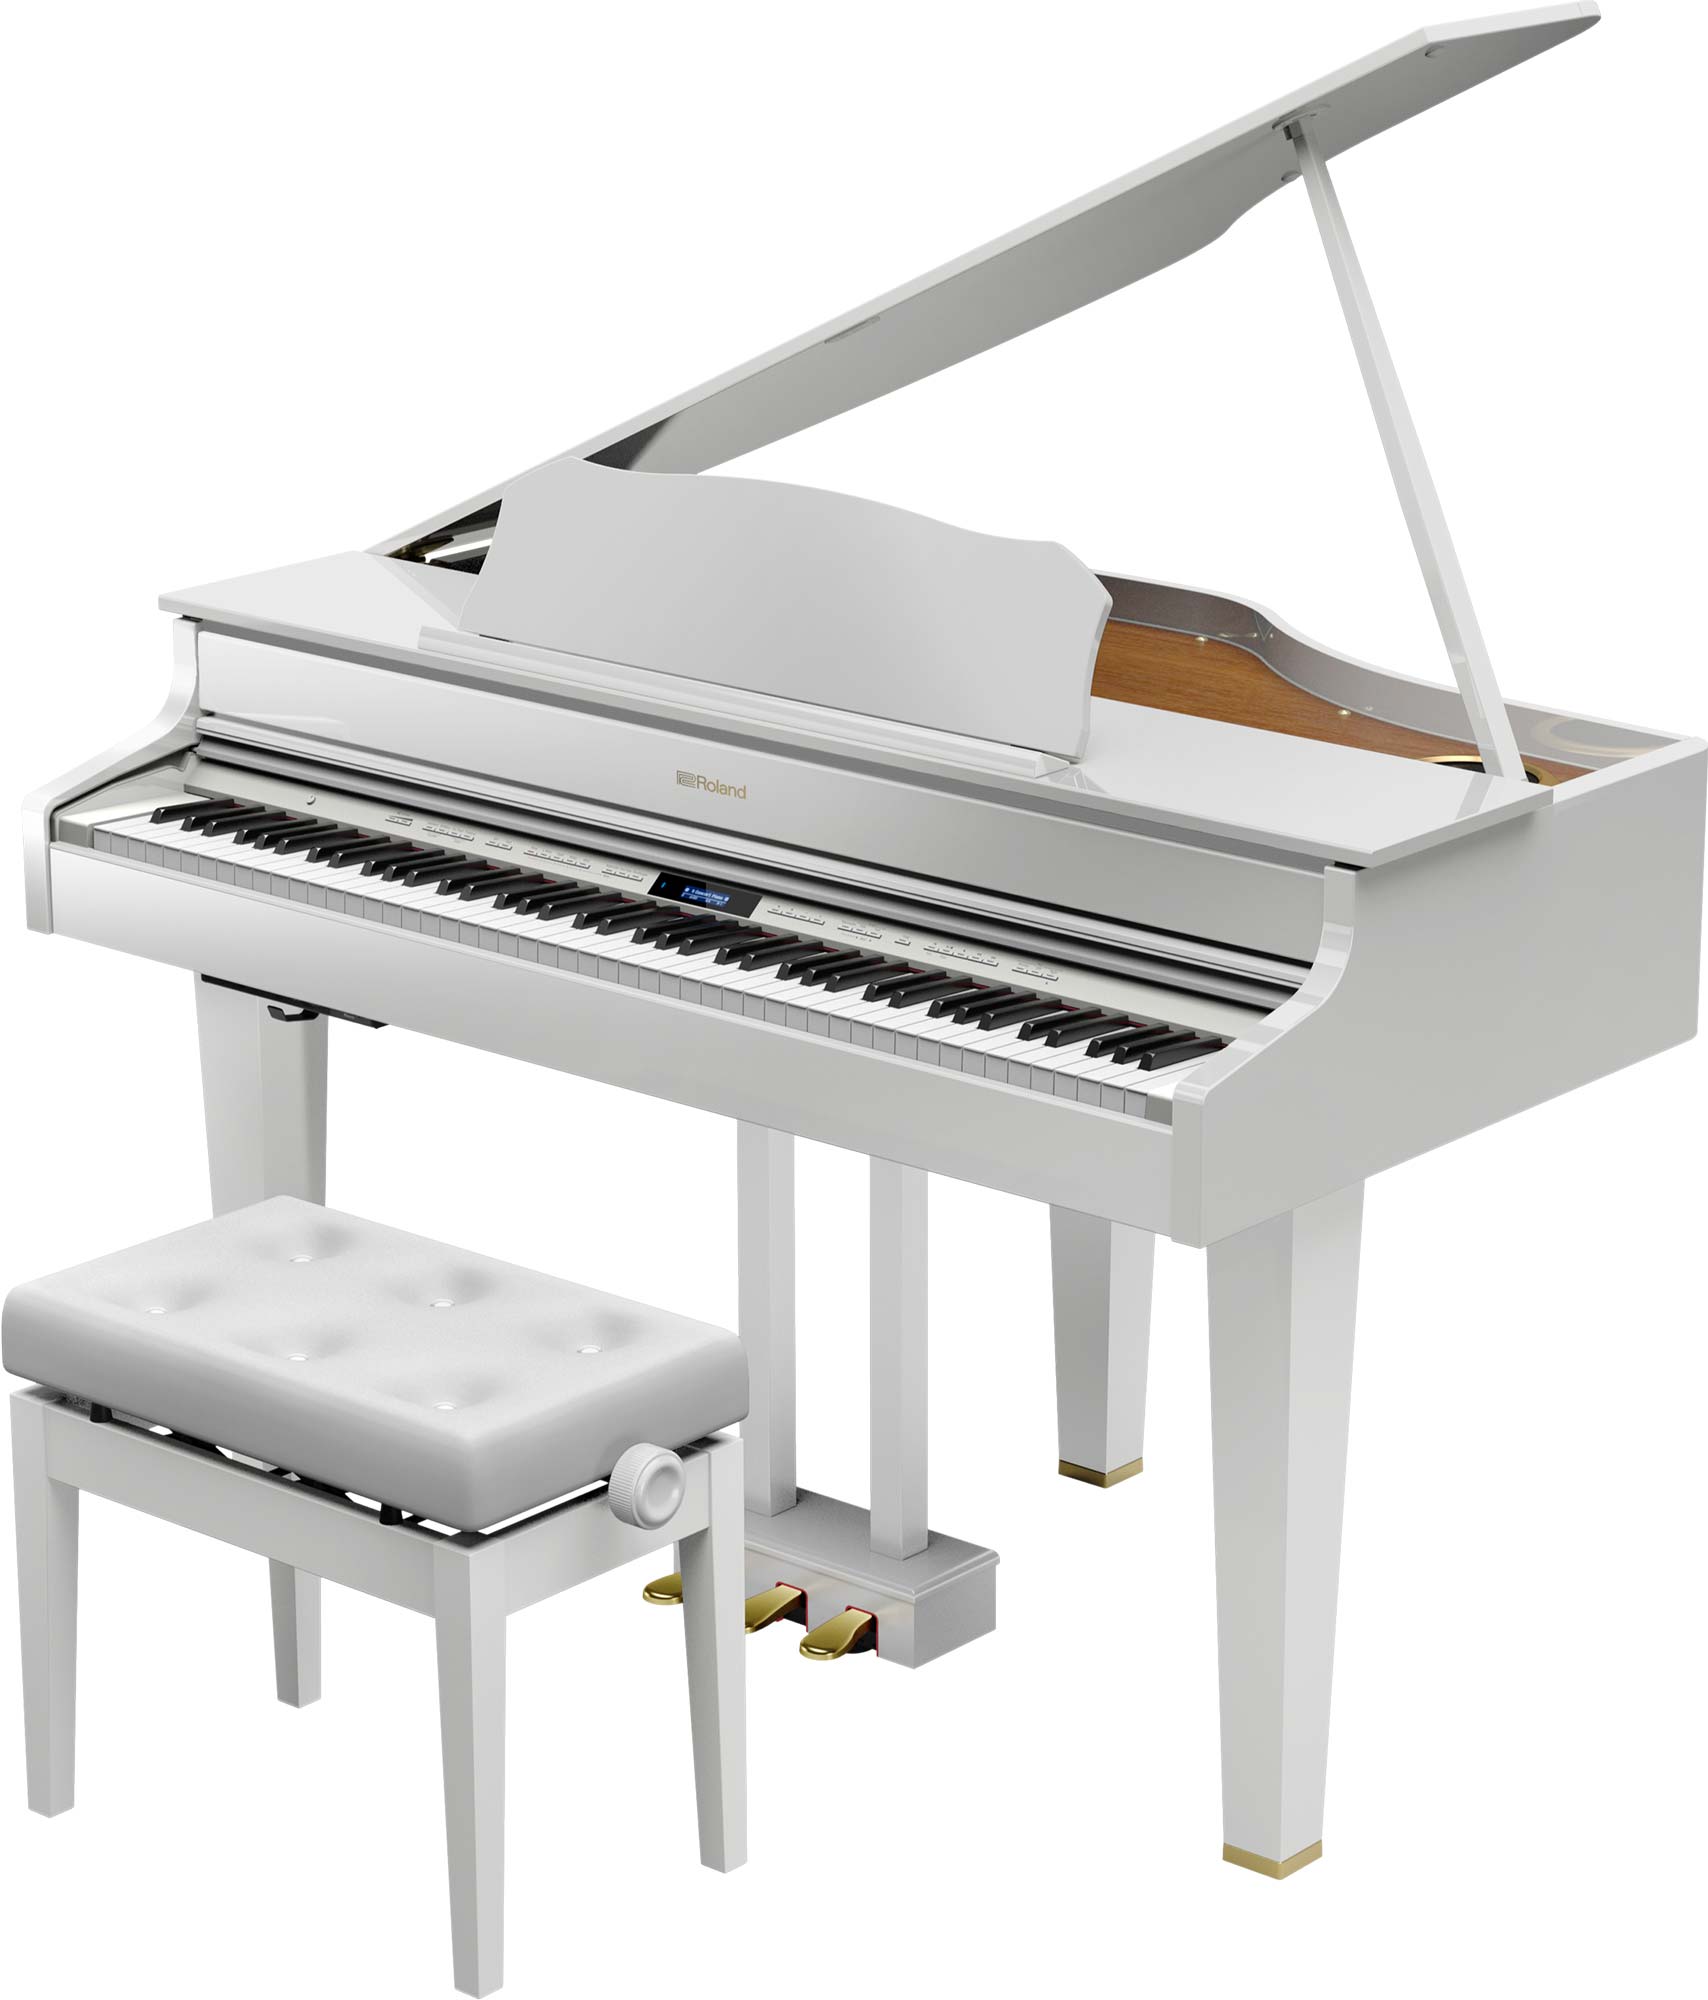 【展示品限り】ローランド「GP607 PW」コンパクトな電子グランドピアノ【アウトレット特価品】